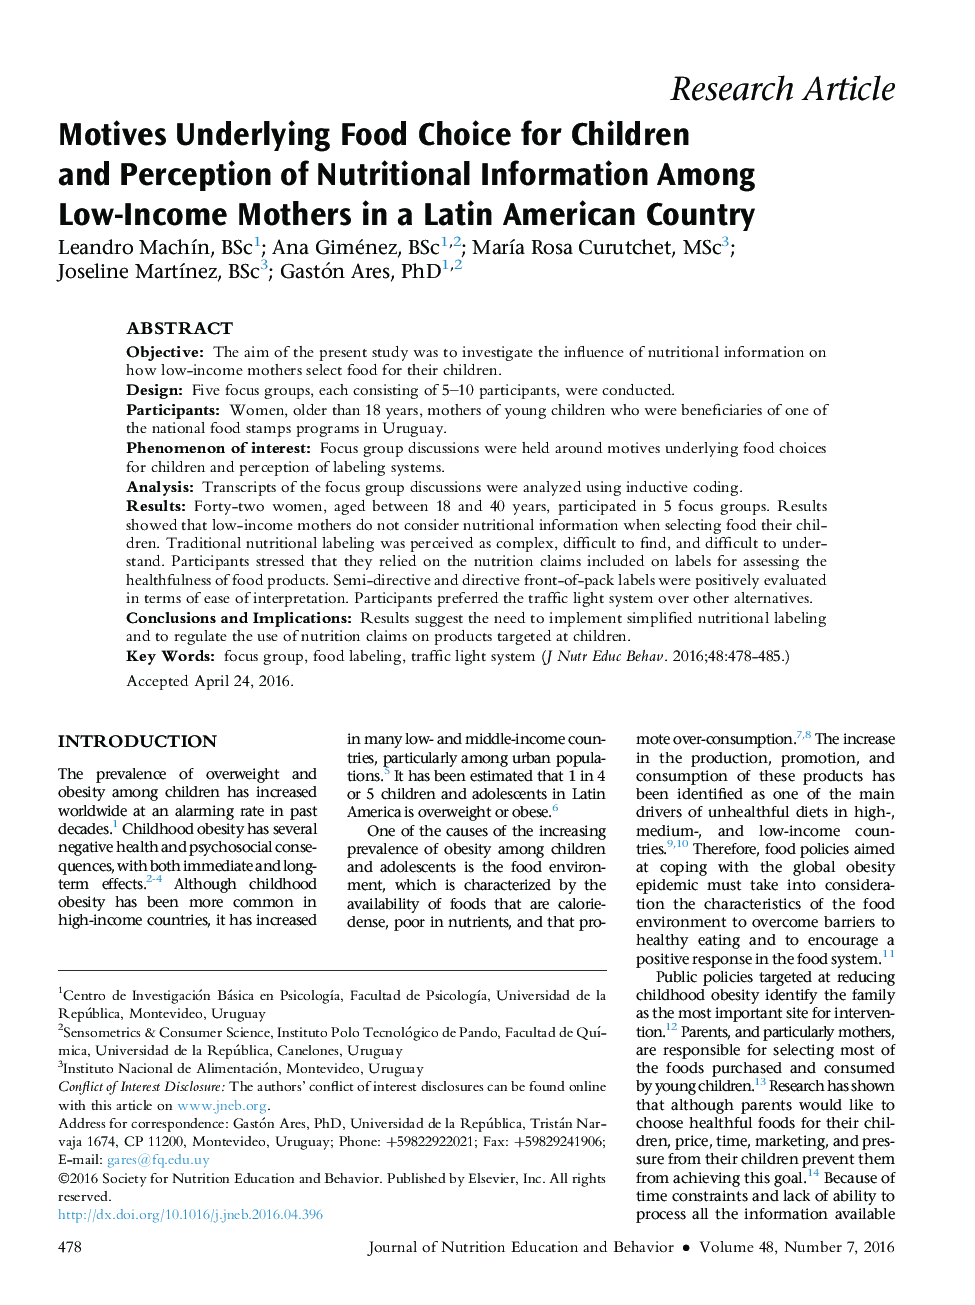 انگیزه های انتخاب غذایی برای کودکان و ادراک اطلاعات تغذیه ای مادران کم درآمد در یک کشور آمریکای لاتین 